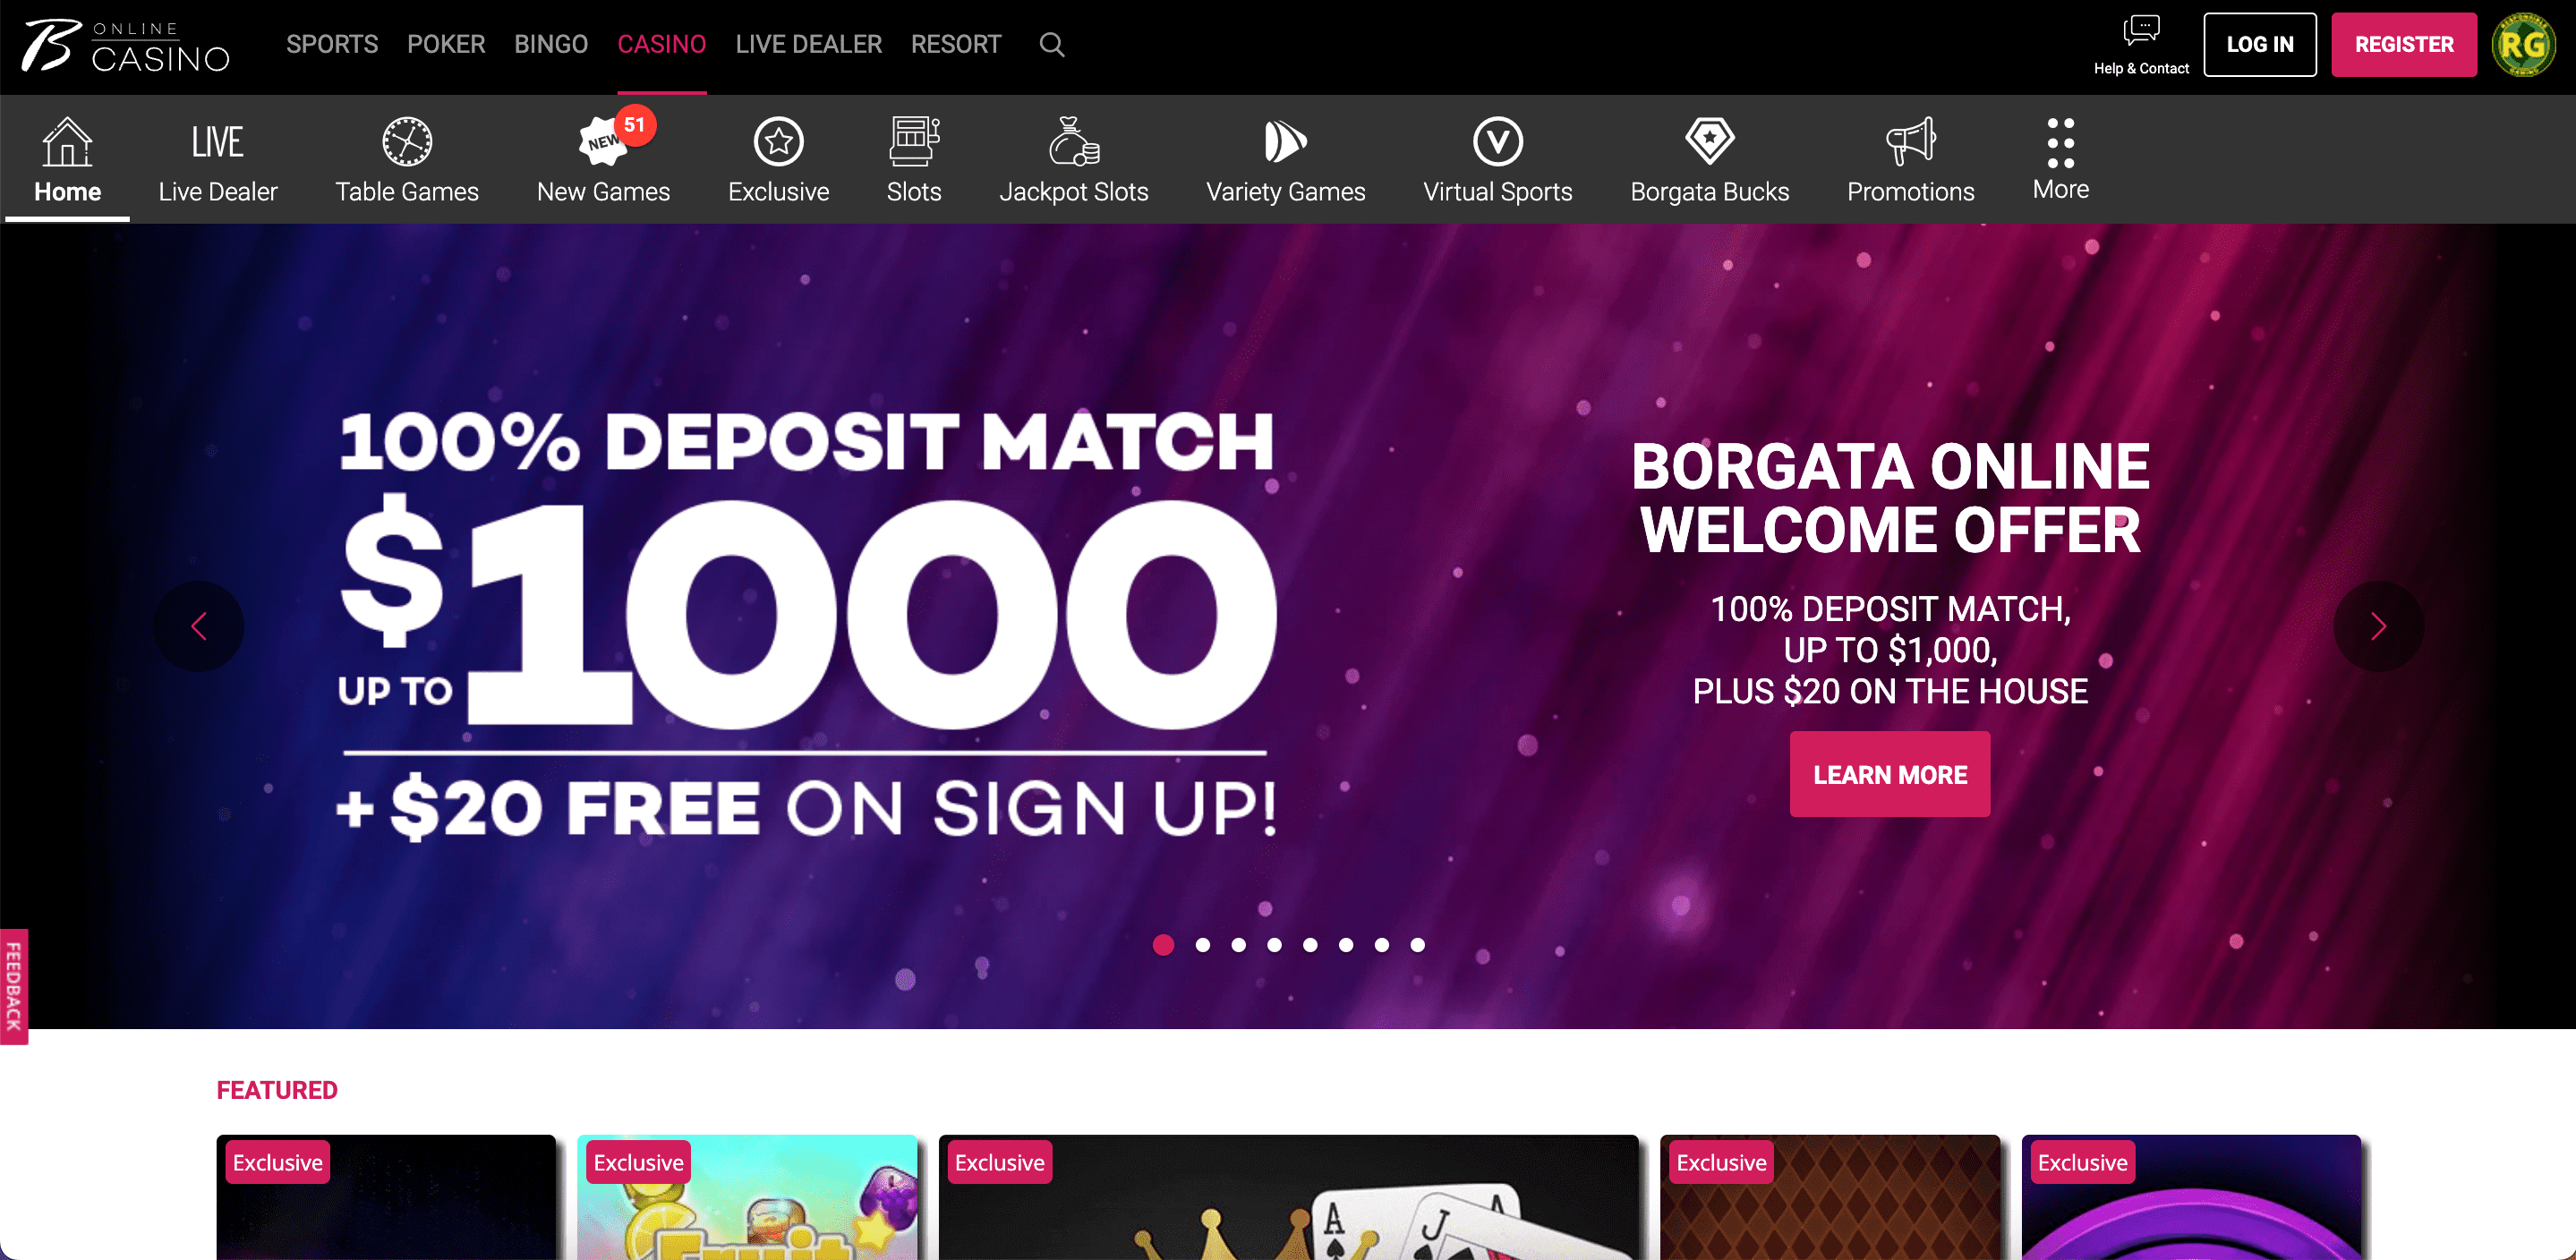 Borgata NJ Casino Home Page